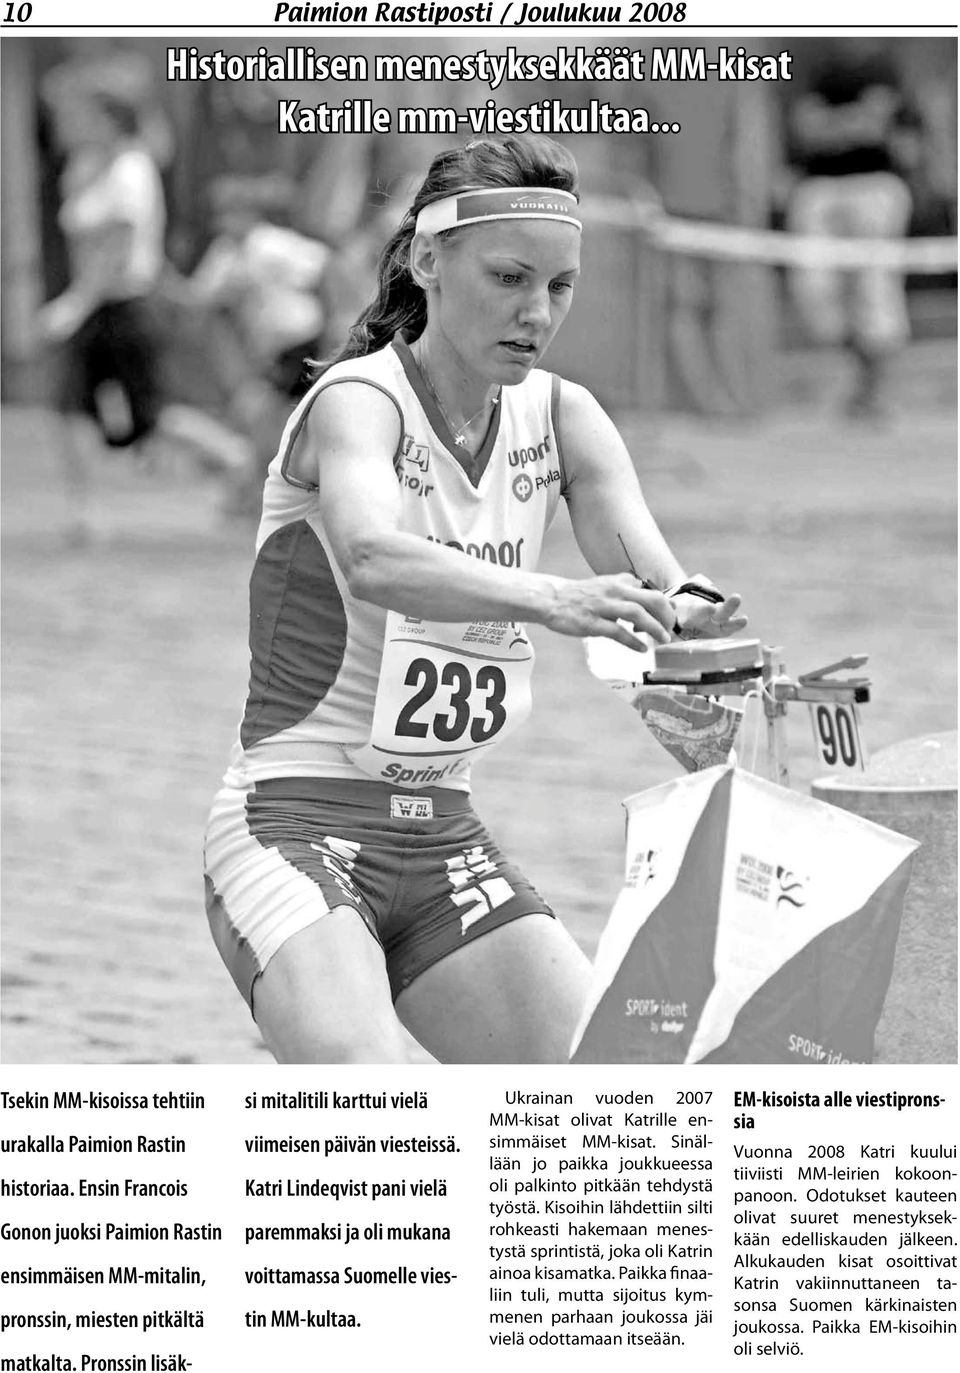 Katri Lindeqvist pani vielä paremmaksi ja oli mukana voittamassa Suomelle viestin MM-kultaa. Ukrainan vuoden 2007 MM-kisat olivat Katrille ensimmäiset MM-kisat.